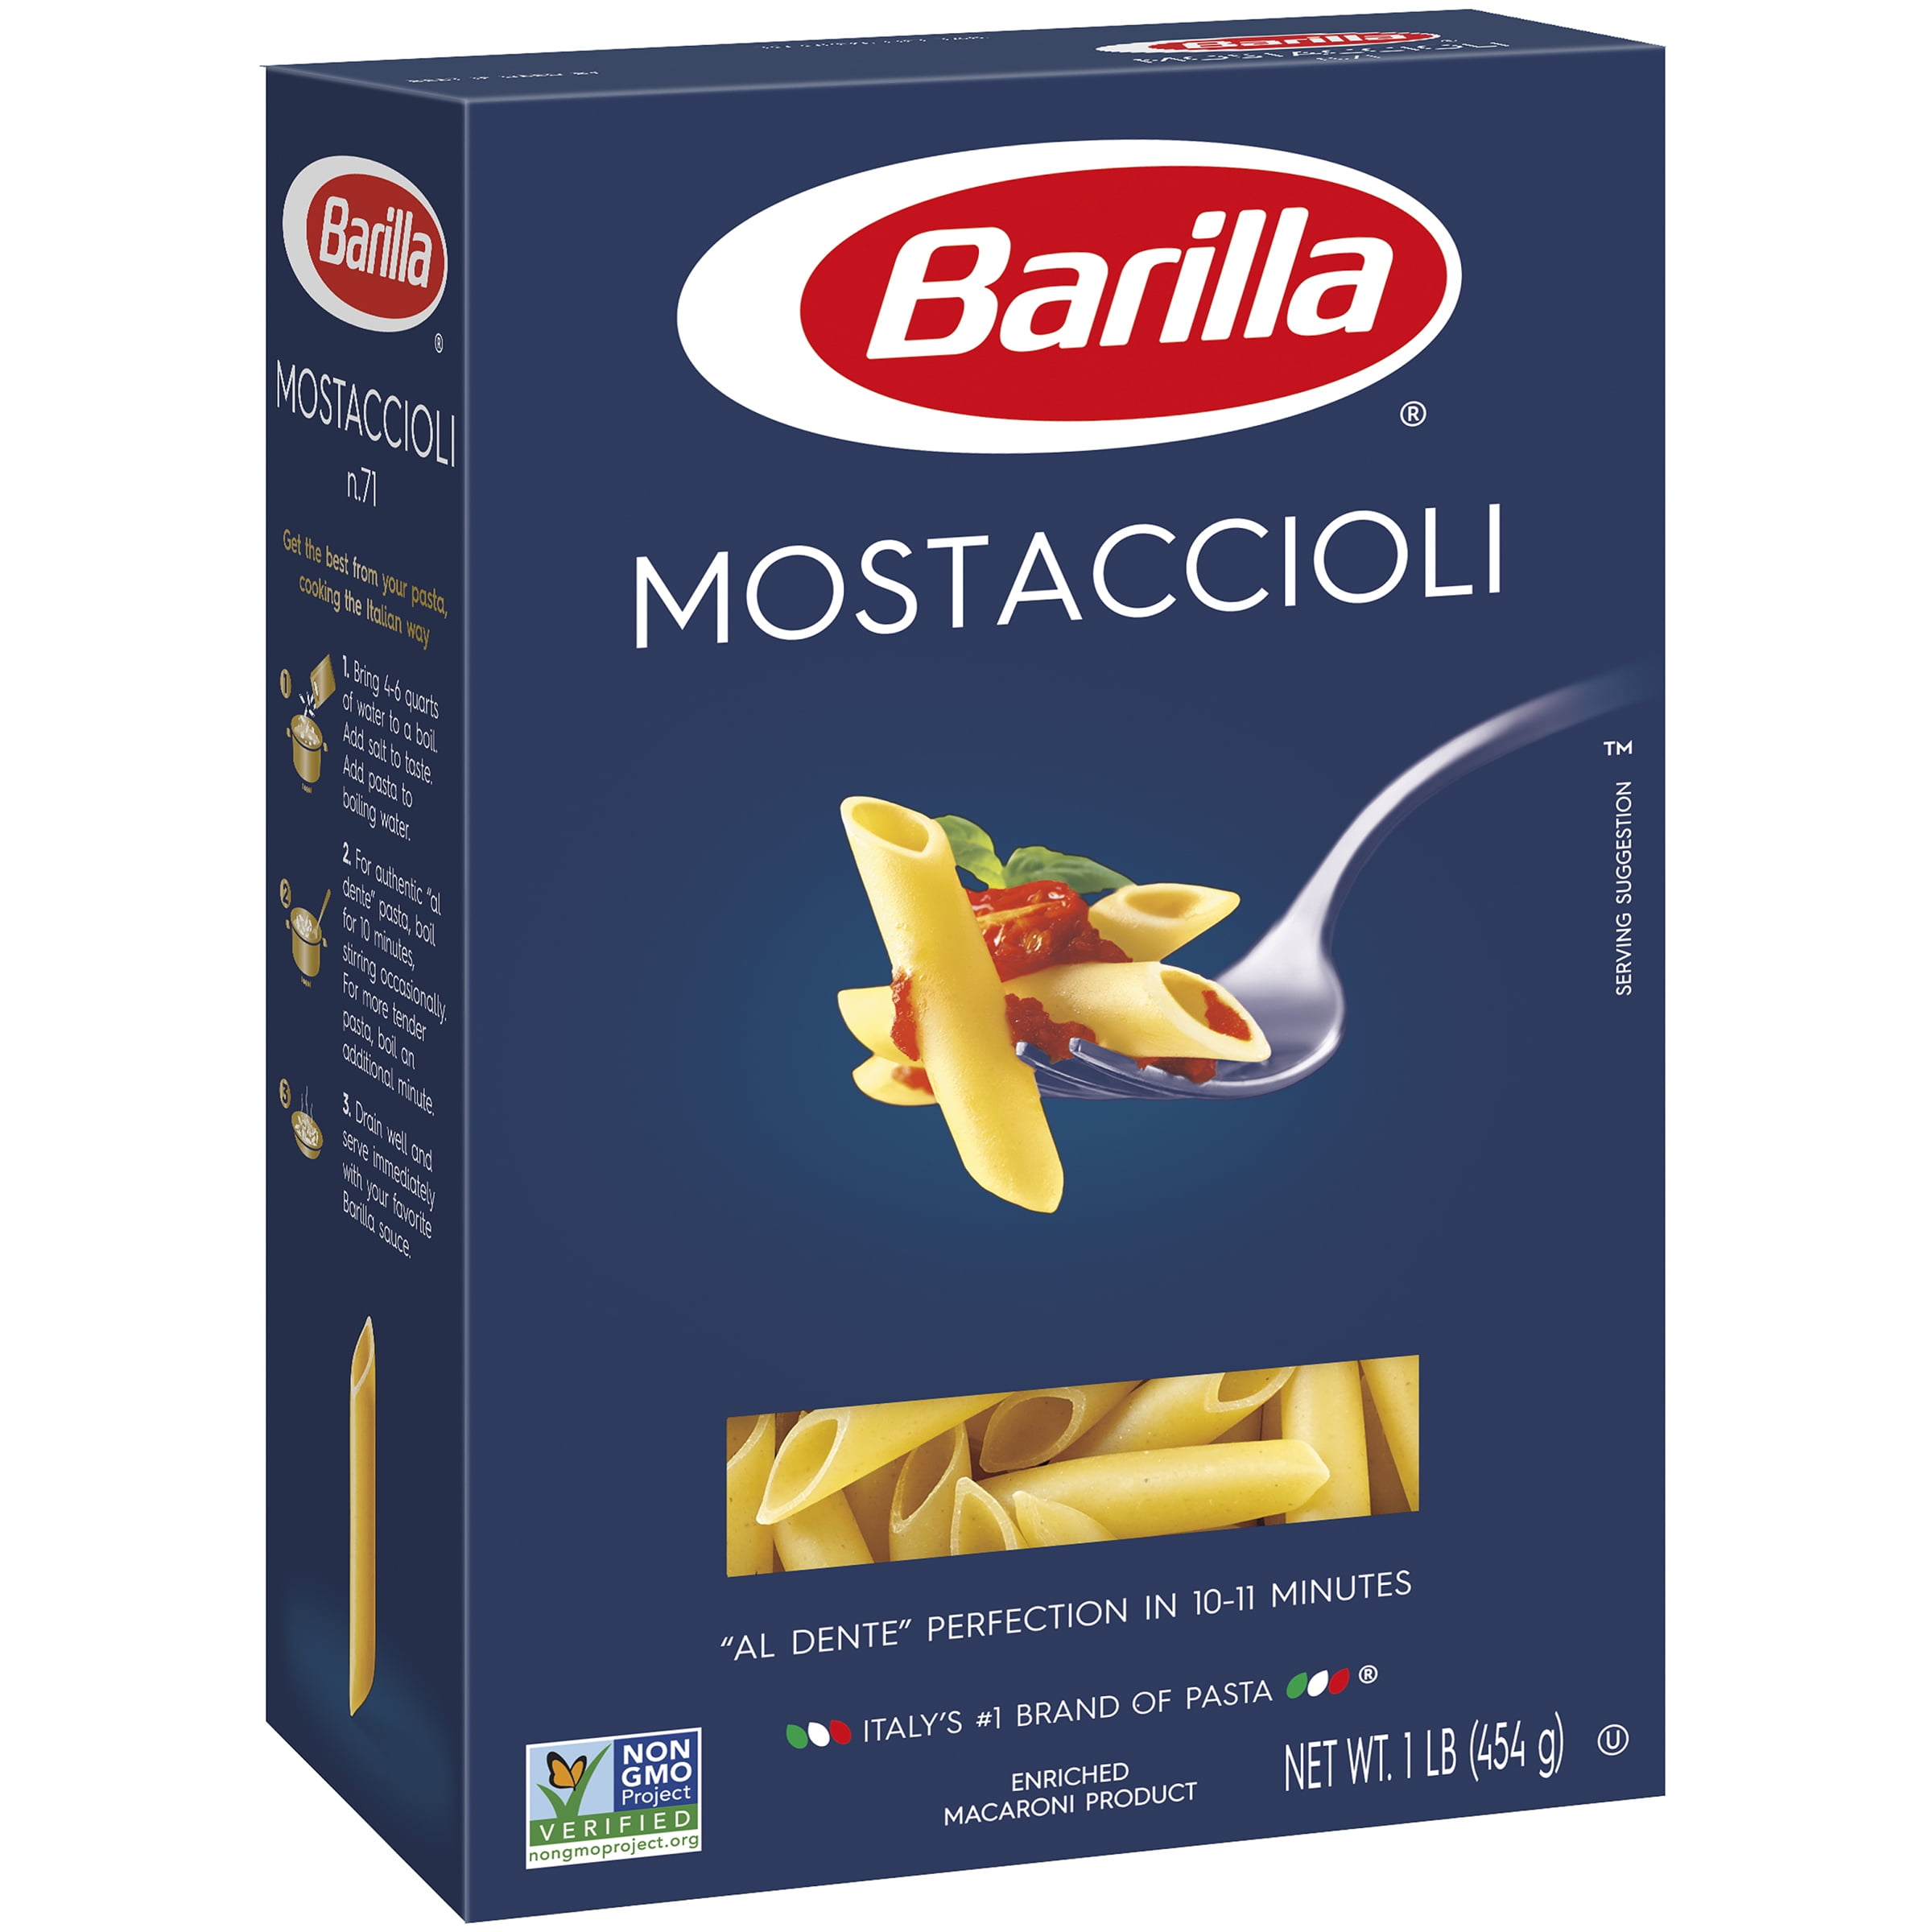 Barilla® Classic Blue Box Pasta Mostaccioli 16 oz